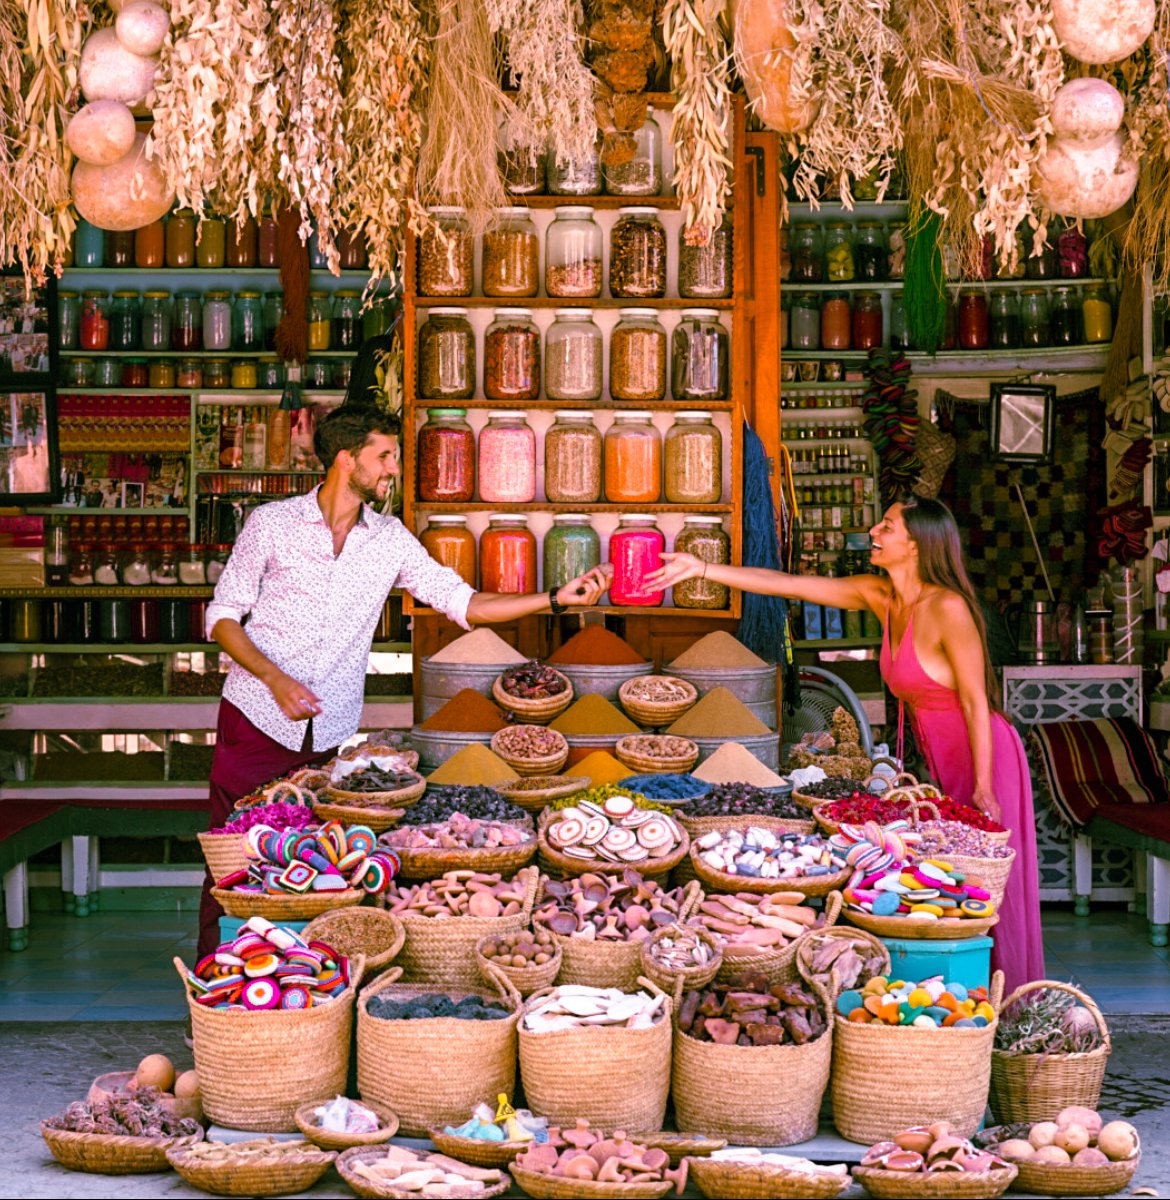 Spice Market in Marrakech